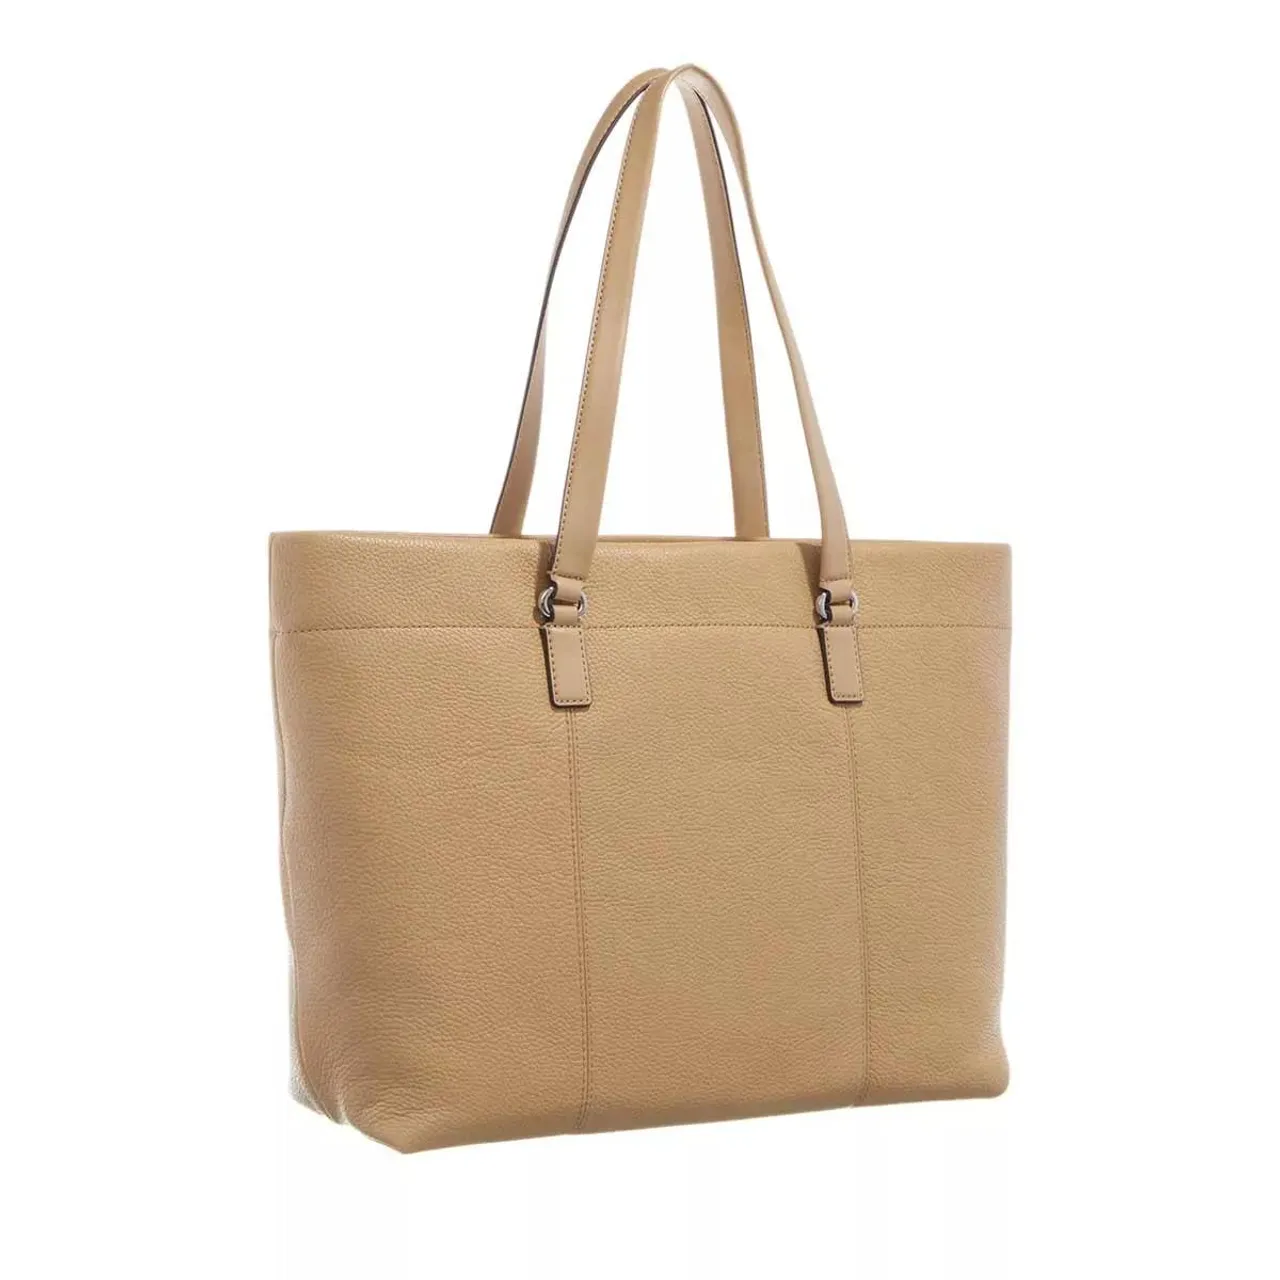 Michael Kors Tote Bags - Slater Large Top-Zip Tote - beige - Tote Bags for ladies